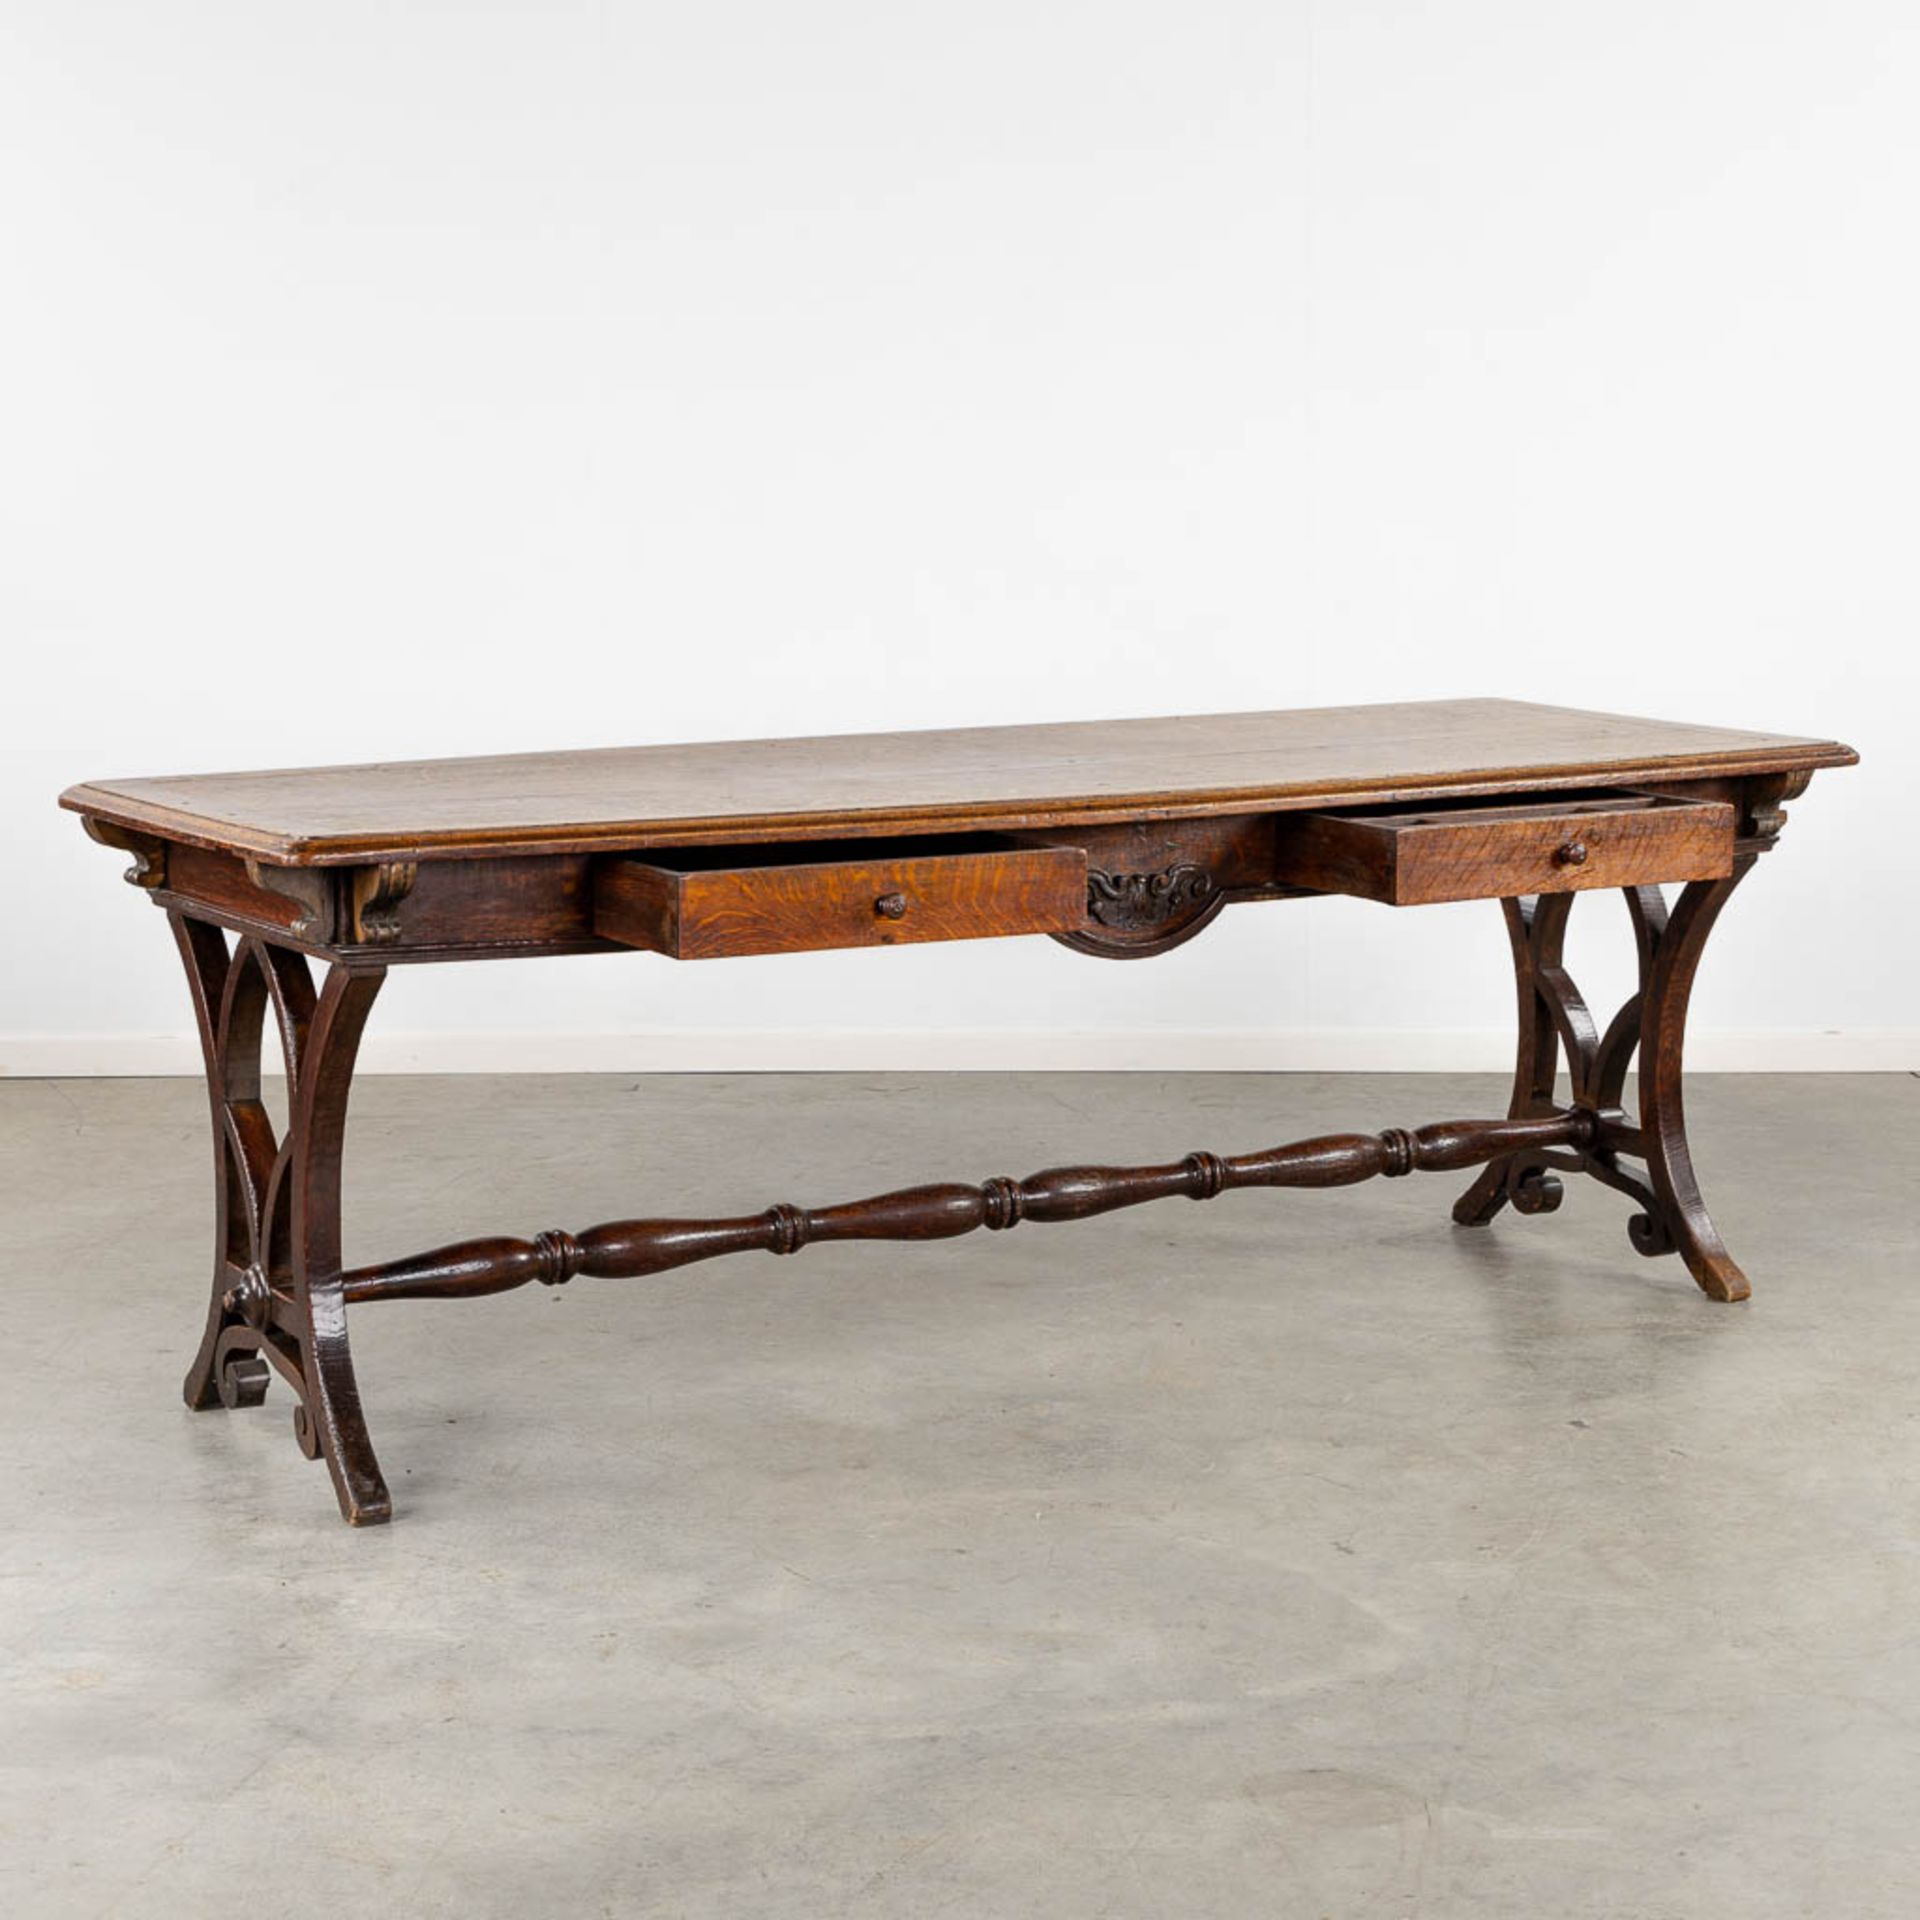 An antique desk/table with sculptures and a drawer, oak. 19th C. (L:77 x W:217 x H:76 cm) - Bild 3 aus 13